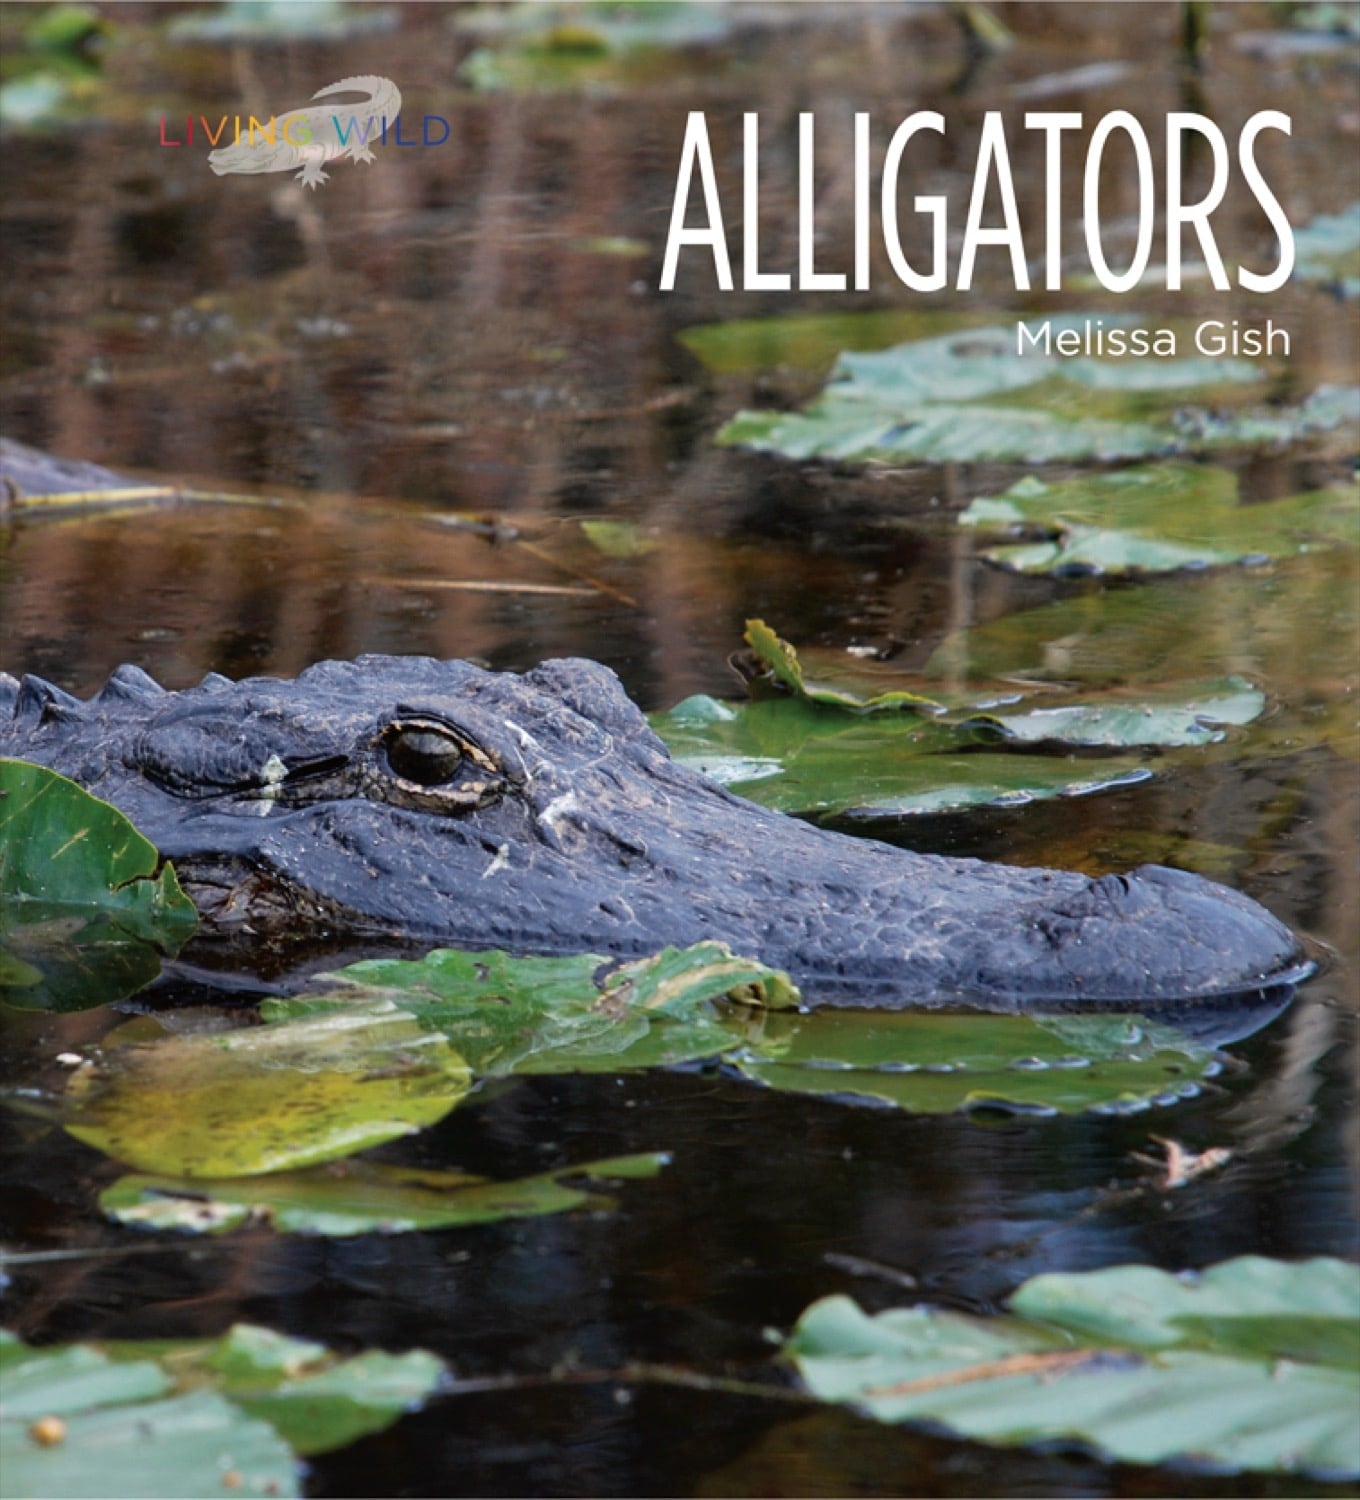 Living Wild - Classic Edition: Alligatoren